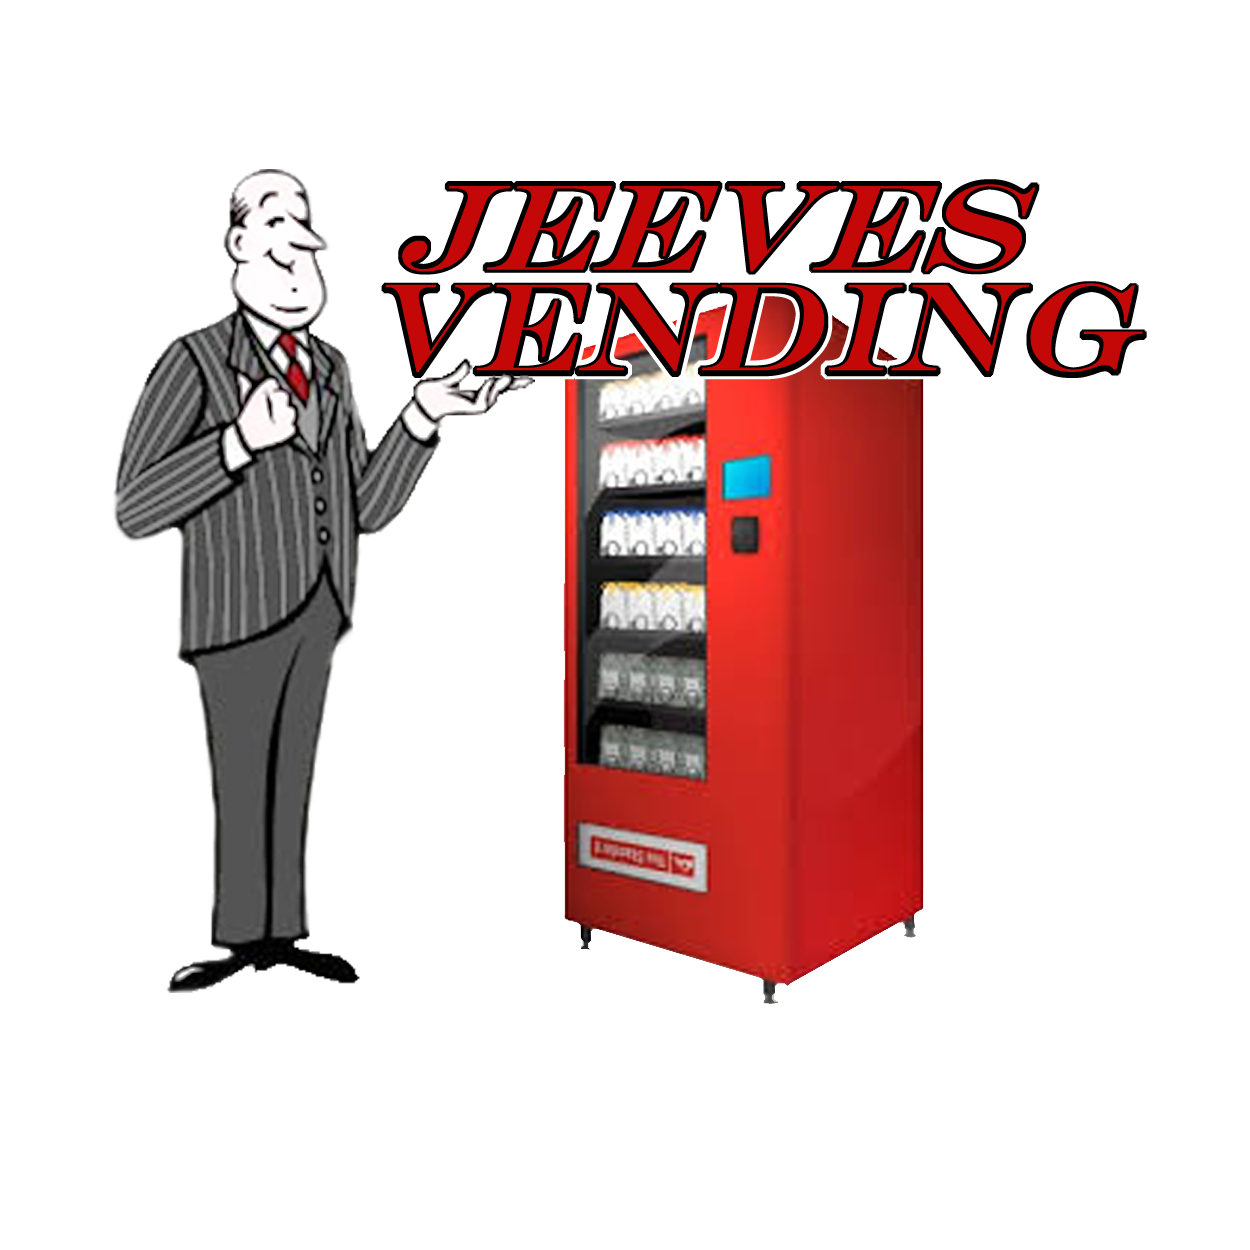 Jeeves Vending